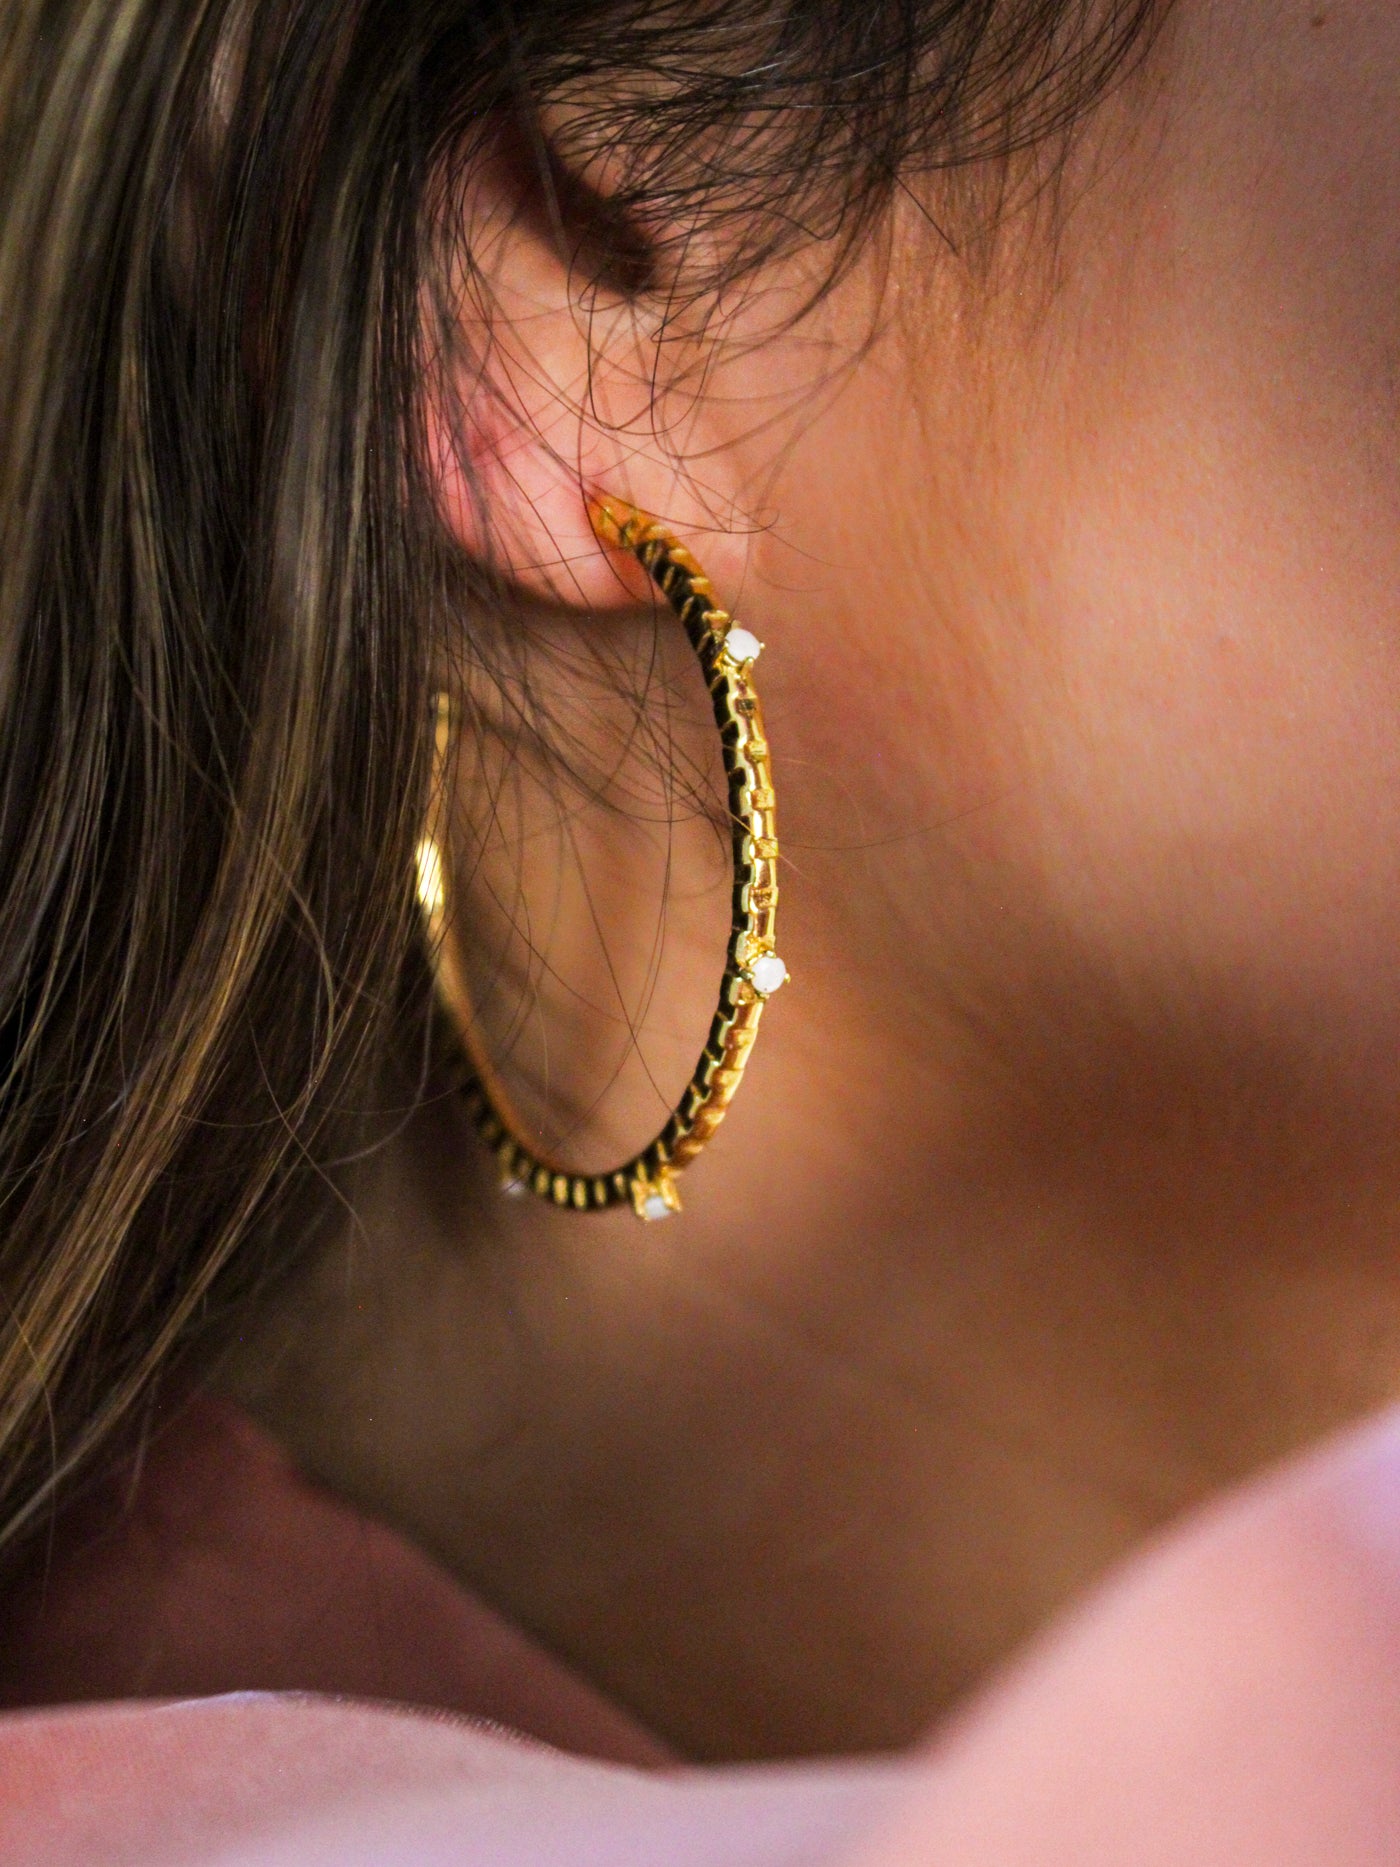 Rhinestone hoop earrings - EVE